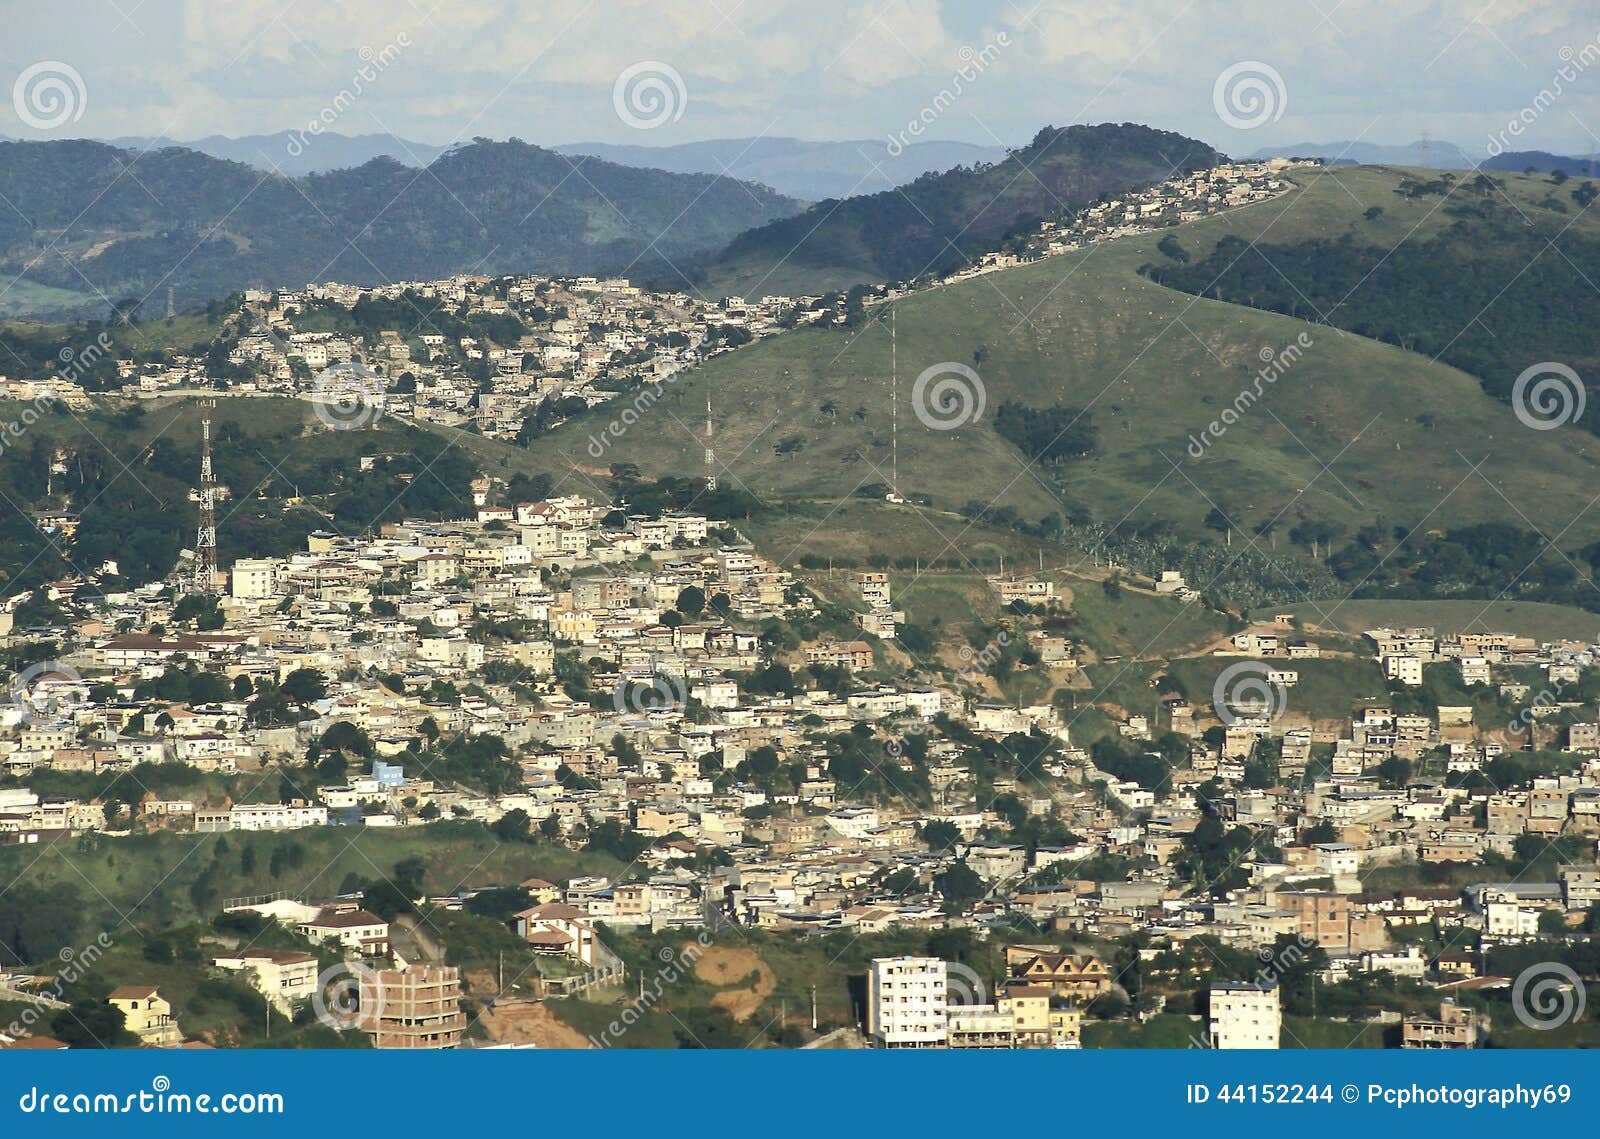 view of the city of juiz de fora, minas gerais, brazil.